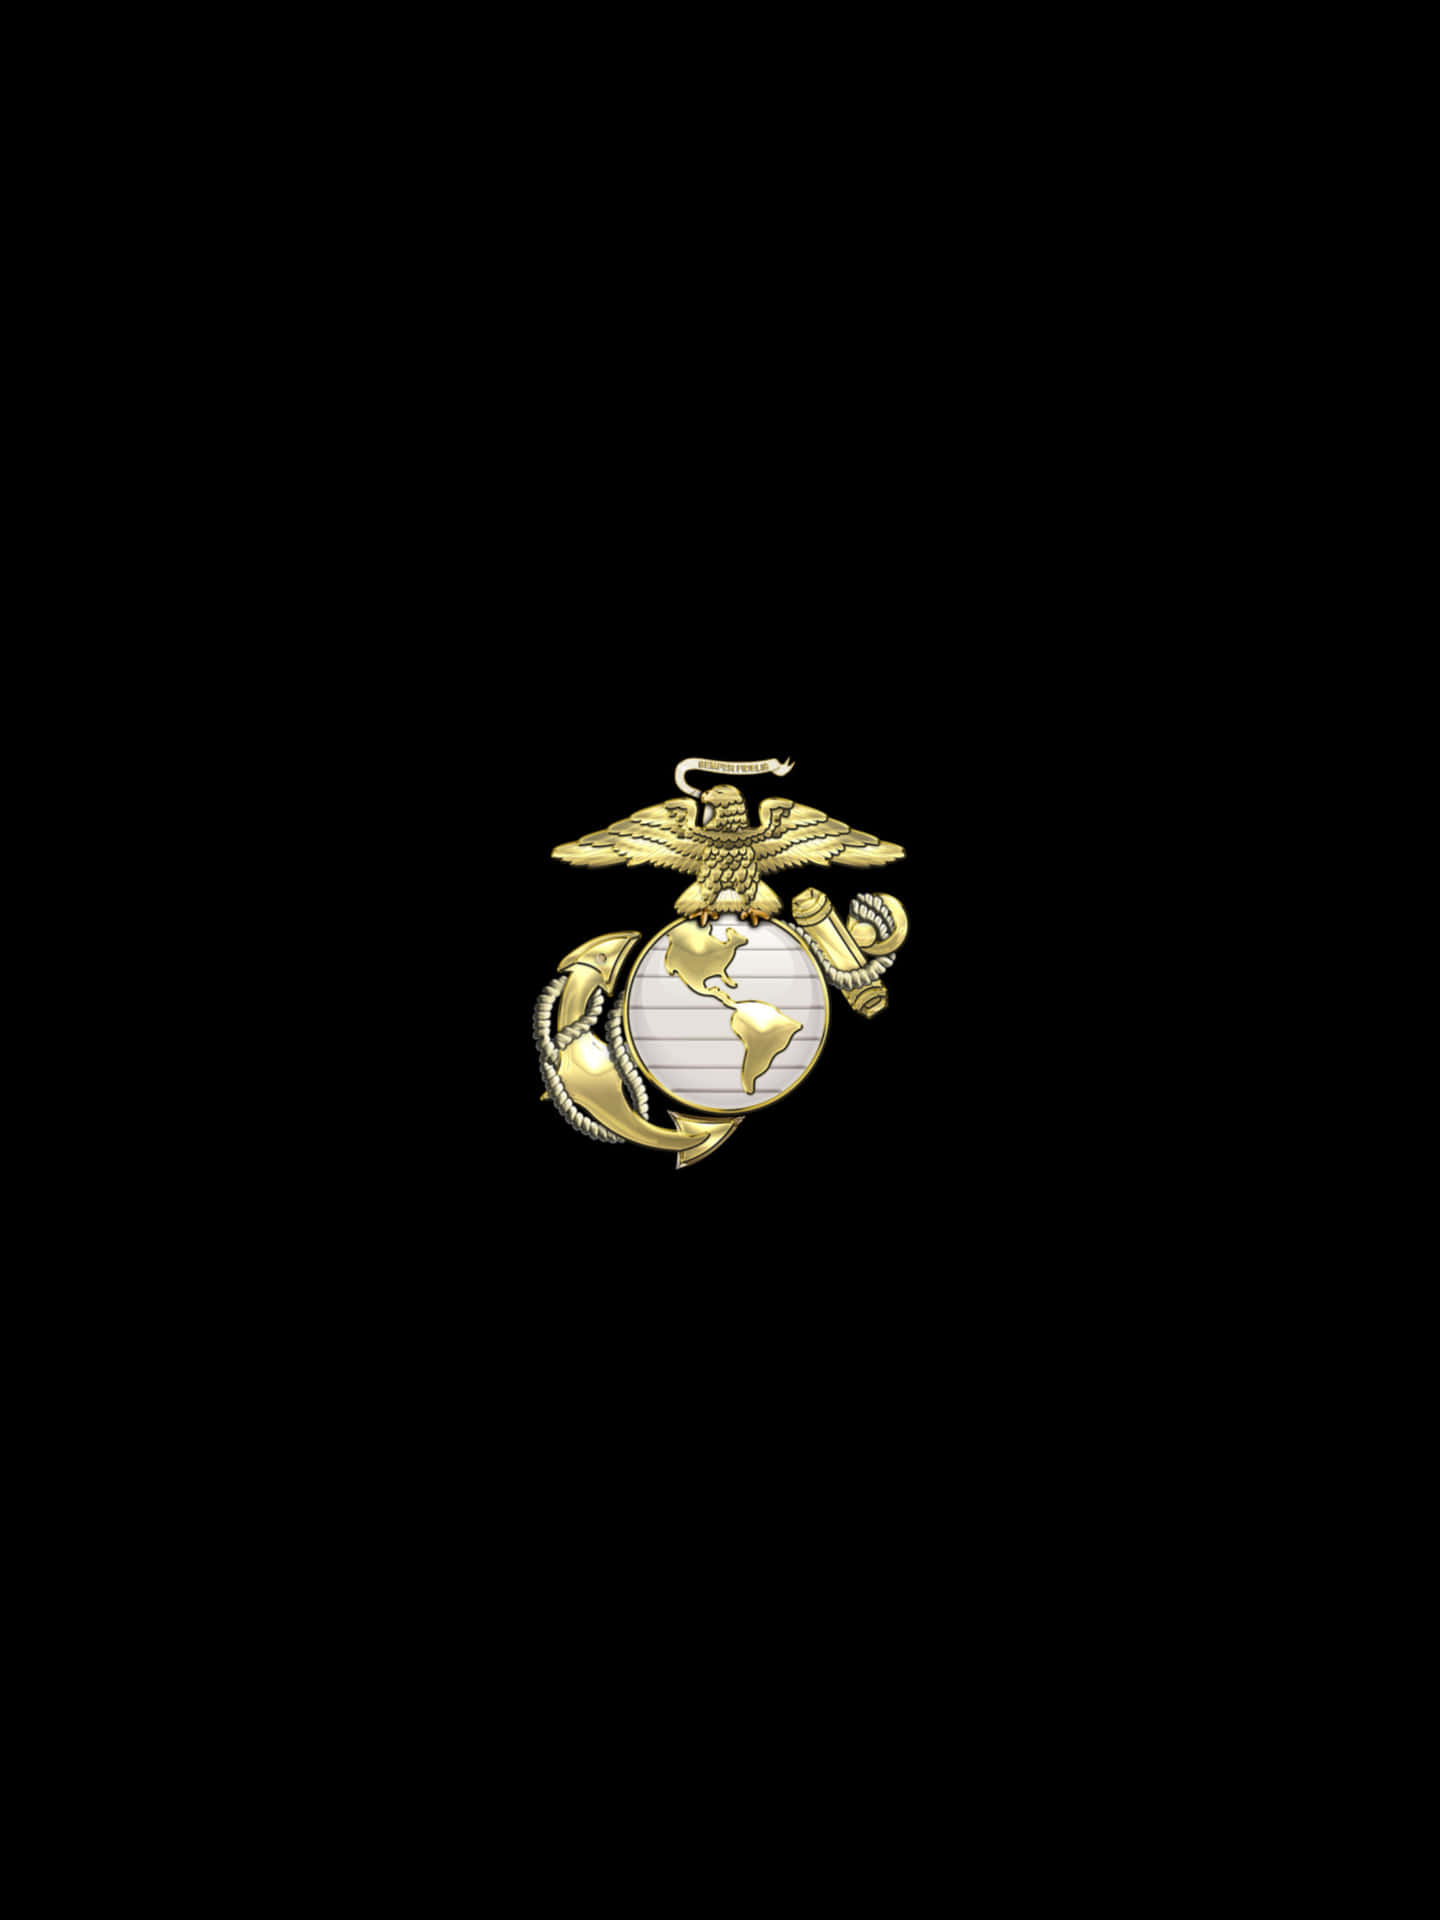 Unmiembro Del Cuerpo De Marines De Estados Unidos Preparándose Para El Deber. Fondo de pantalla